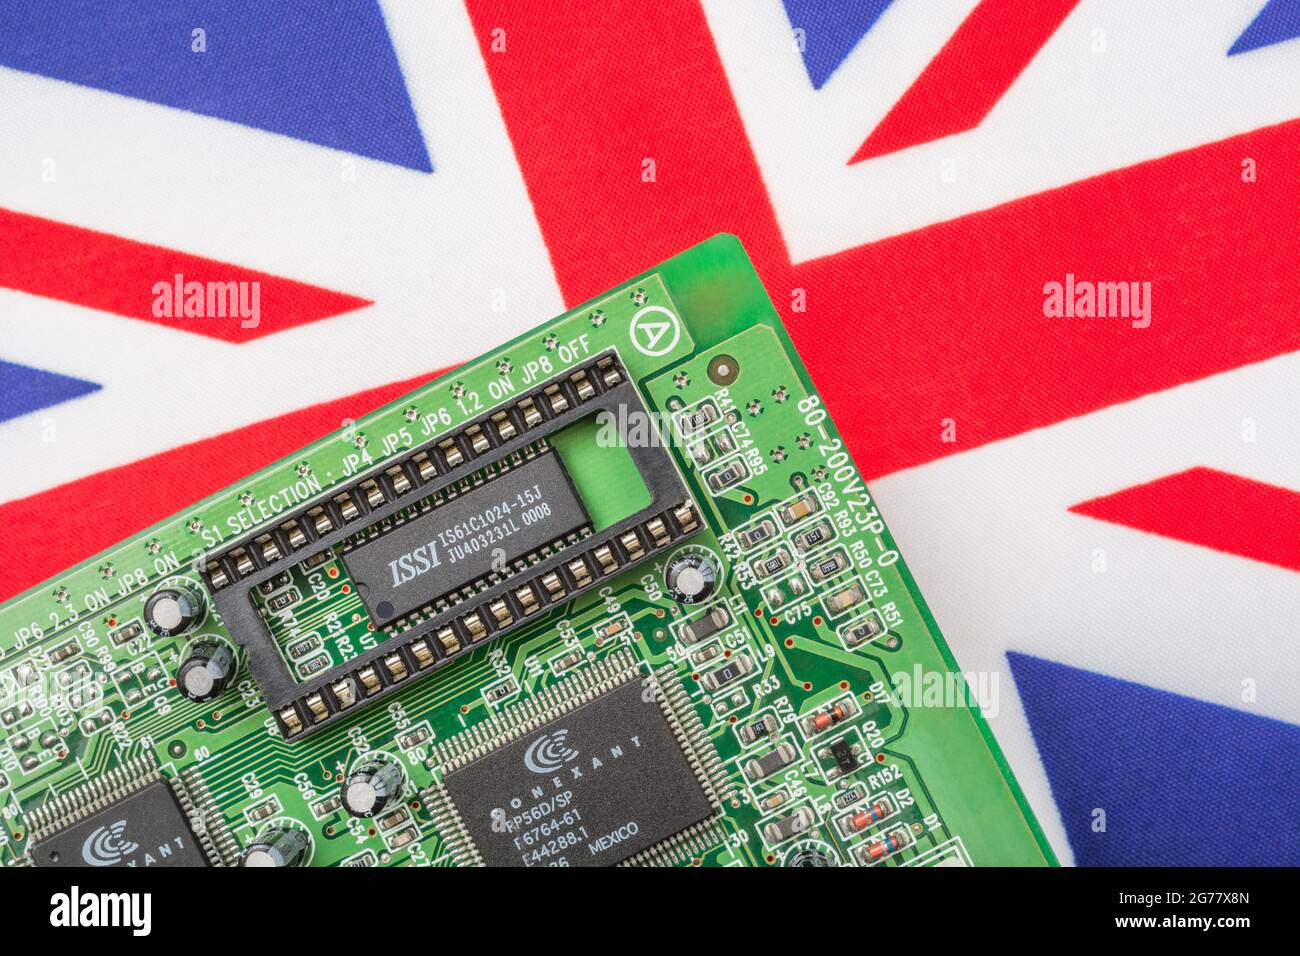 UK Union Jack Flag mit grüner Leiterplatte mit leerer EPROM-Buchse. Für 2021 Engpässe bei integrierten Computerchips, Halbleiterengpässe. Stockfoto